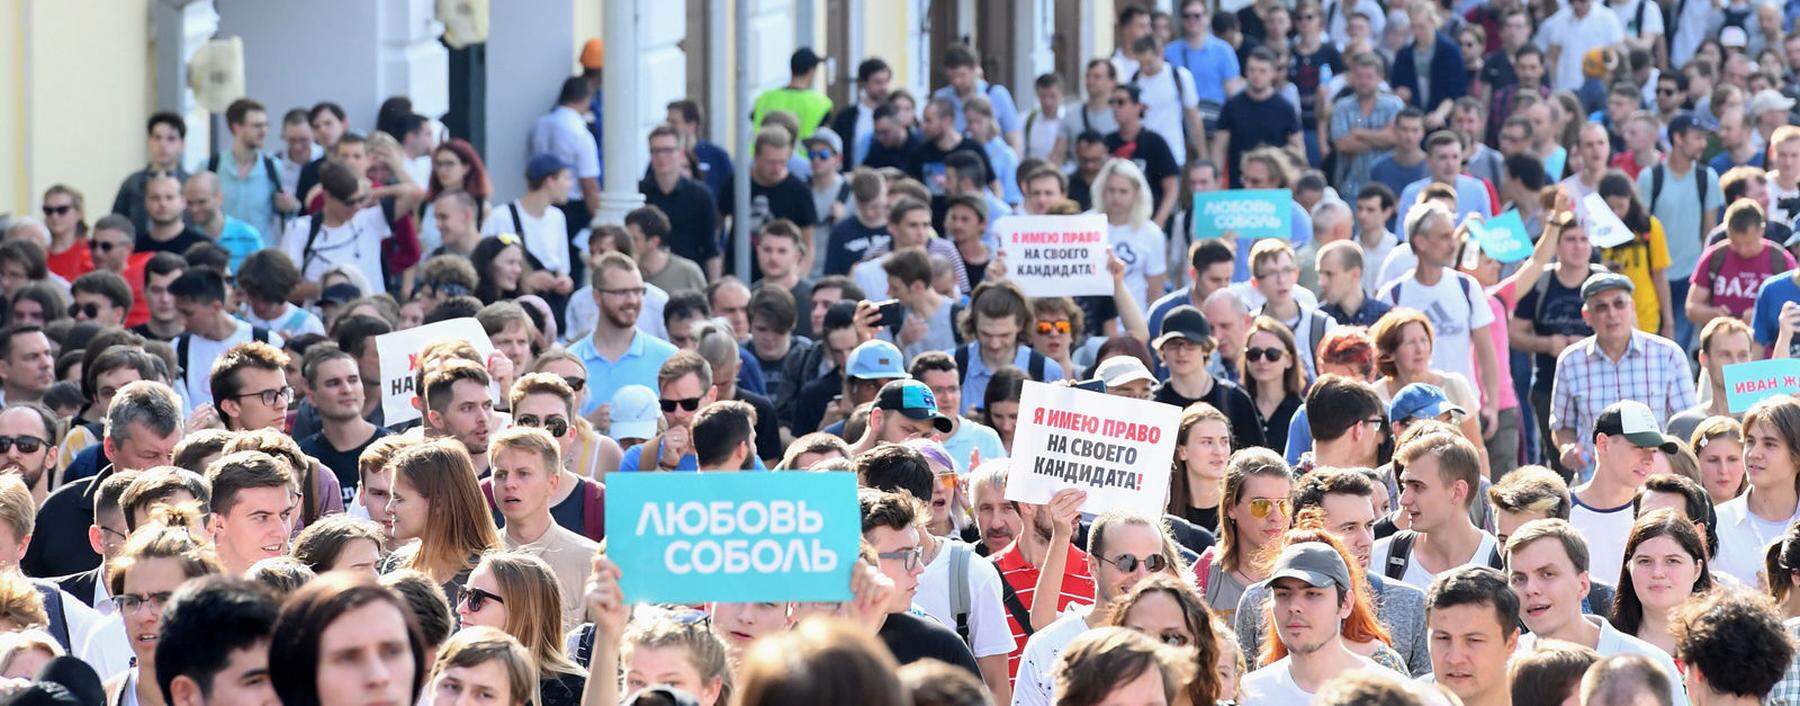 Sie können mit den Werten, die der Kreml propagiert, wenig anfangen. Vor allem Jugendliche nehmen in Moskau an den Kundgebungen für faire Wahlen teil.